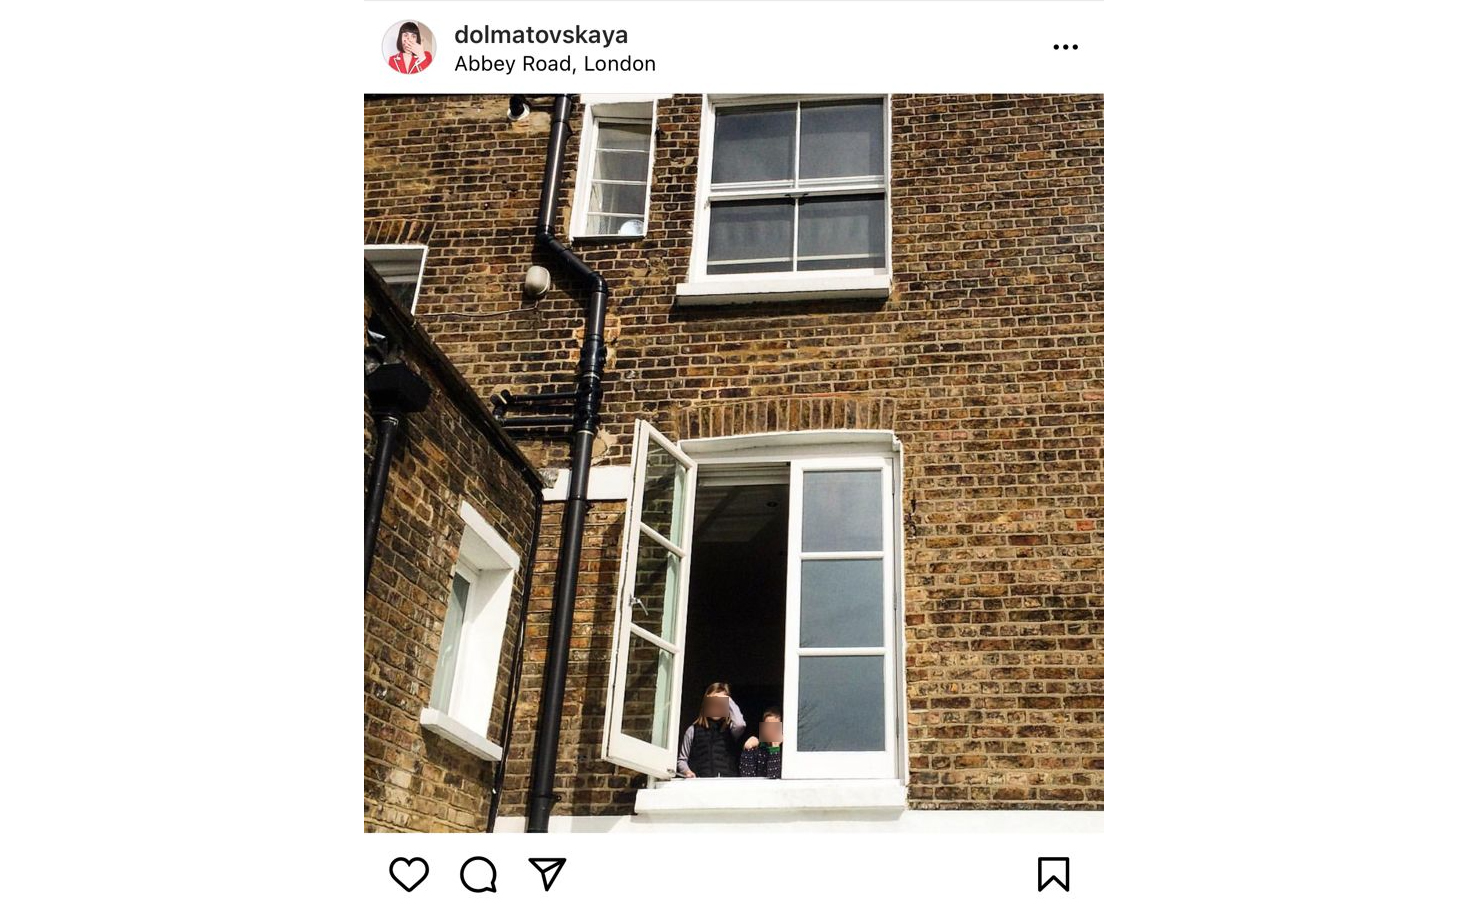 Из окна лондонской квартиры Зимина выглядывают его дочки. Пост опубликовала их мать и жена повара, костюмер Татьяна Долматовская. Фото © Instagram (запрещён на территории Российской Федерации) / dolmatovskaya